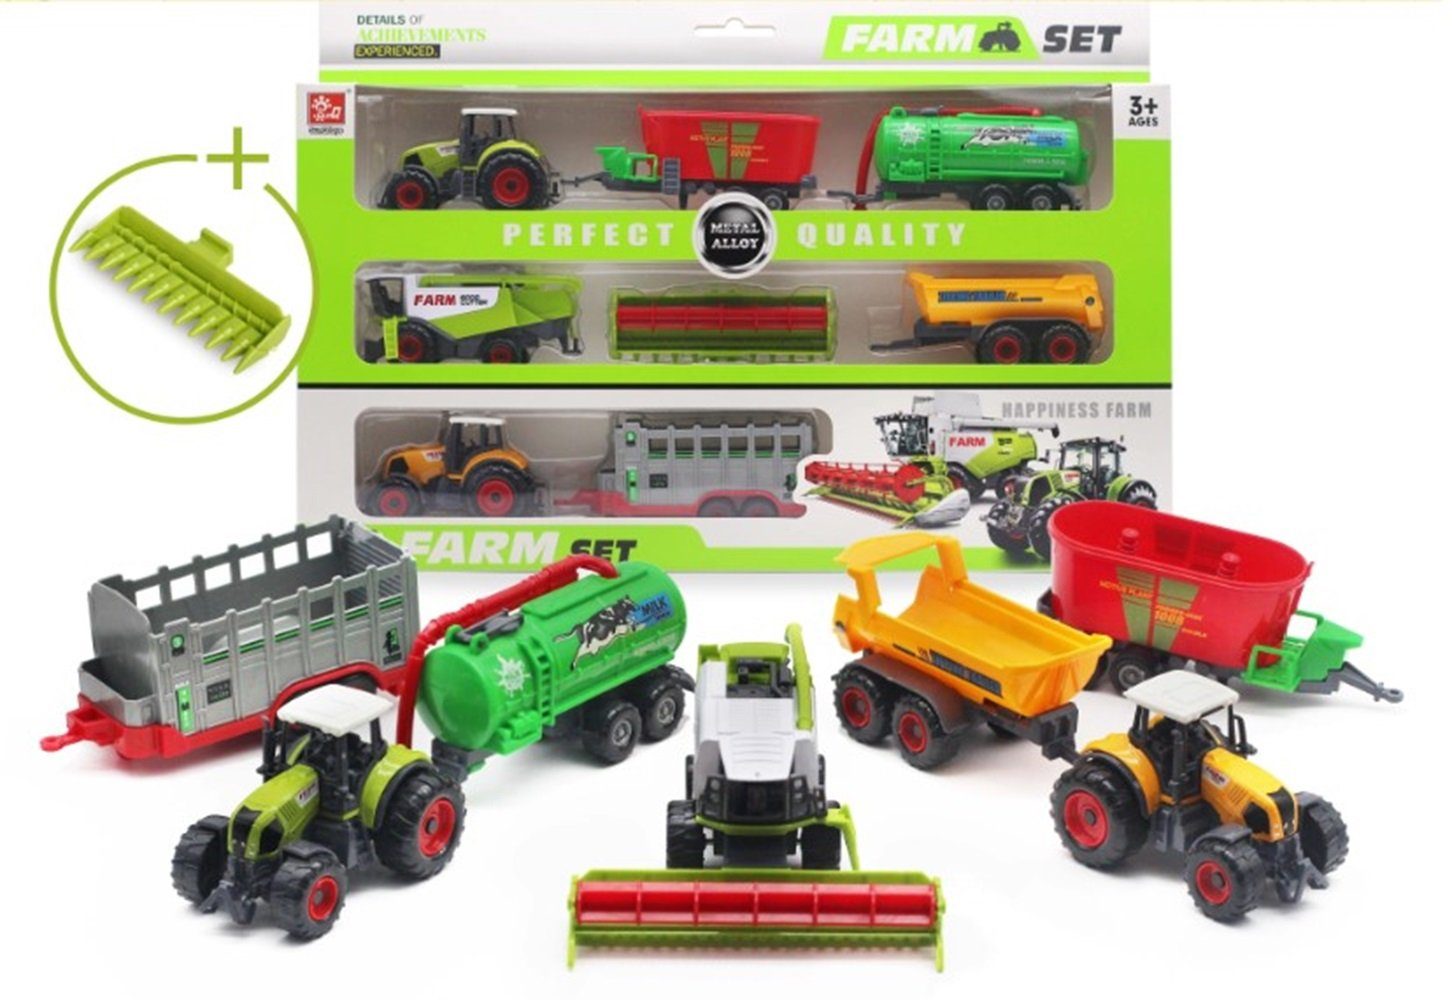 Farm Traktor Spielzeugset Bauernhof Trekker mit Anhänger und Tieren